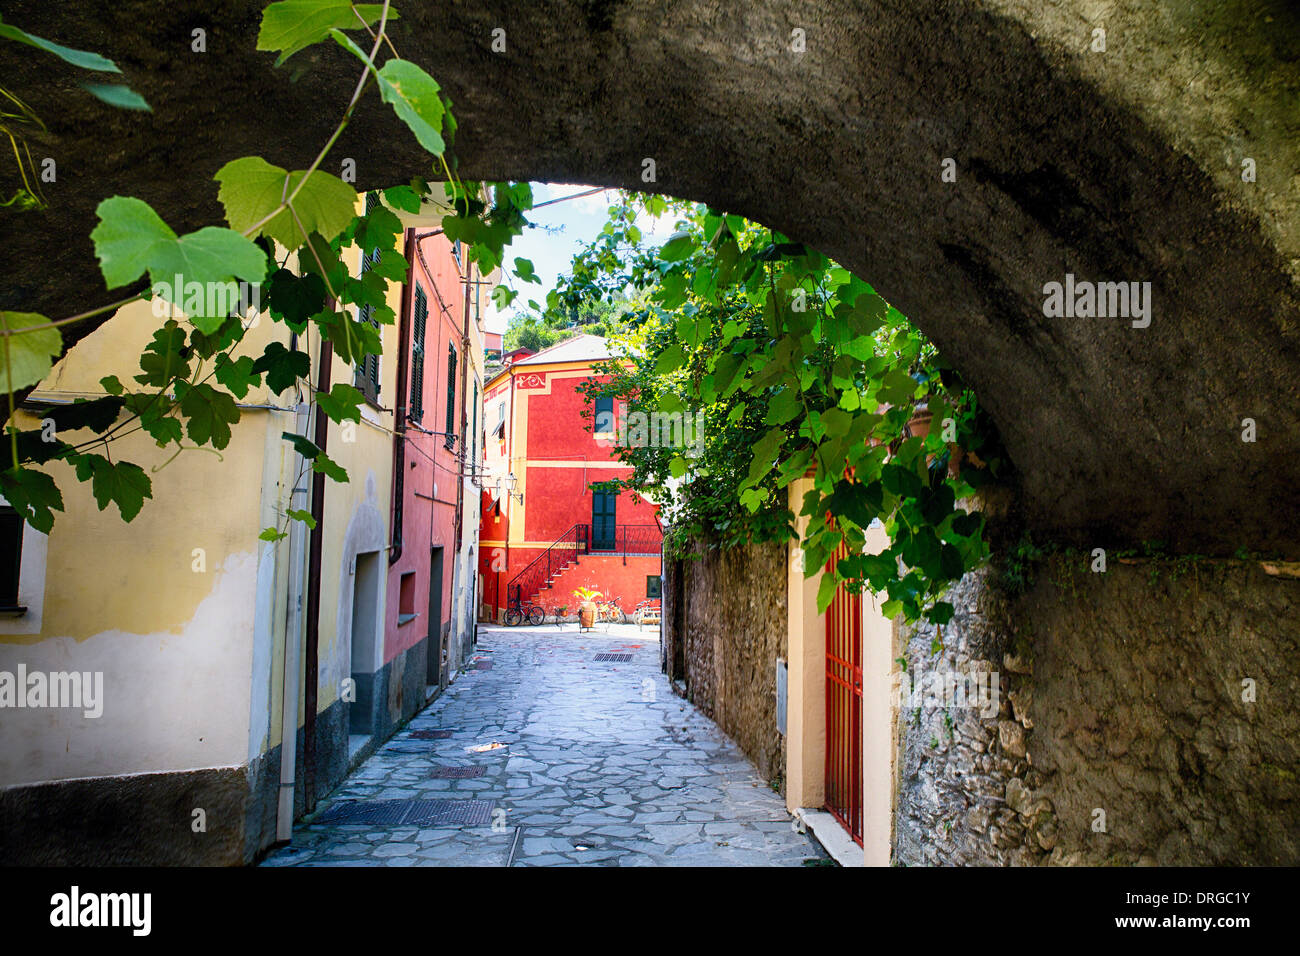 Vue depuis la rue sous une arche, Monterosso al Mare, Cinque Terre, ligurie, italie Banque D'Images